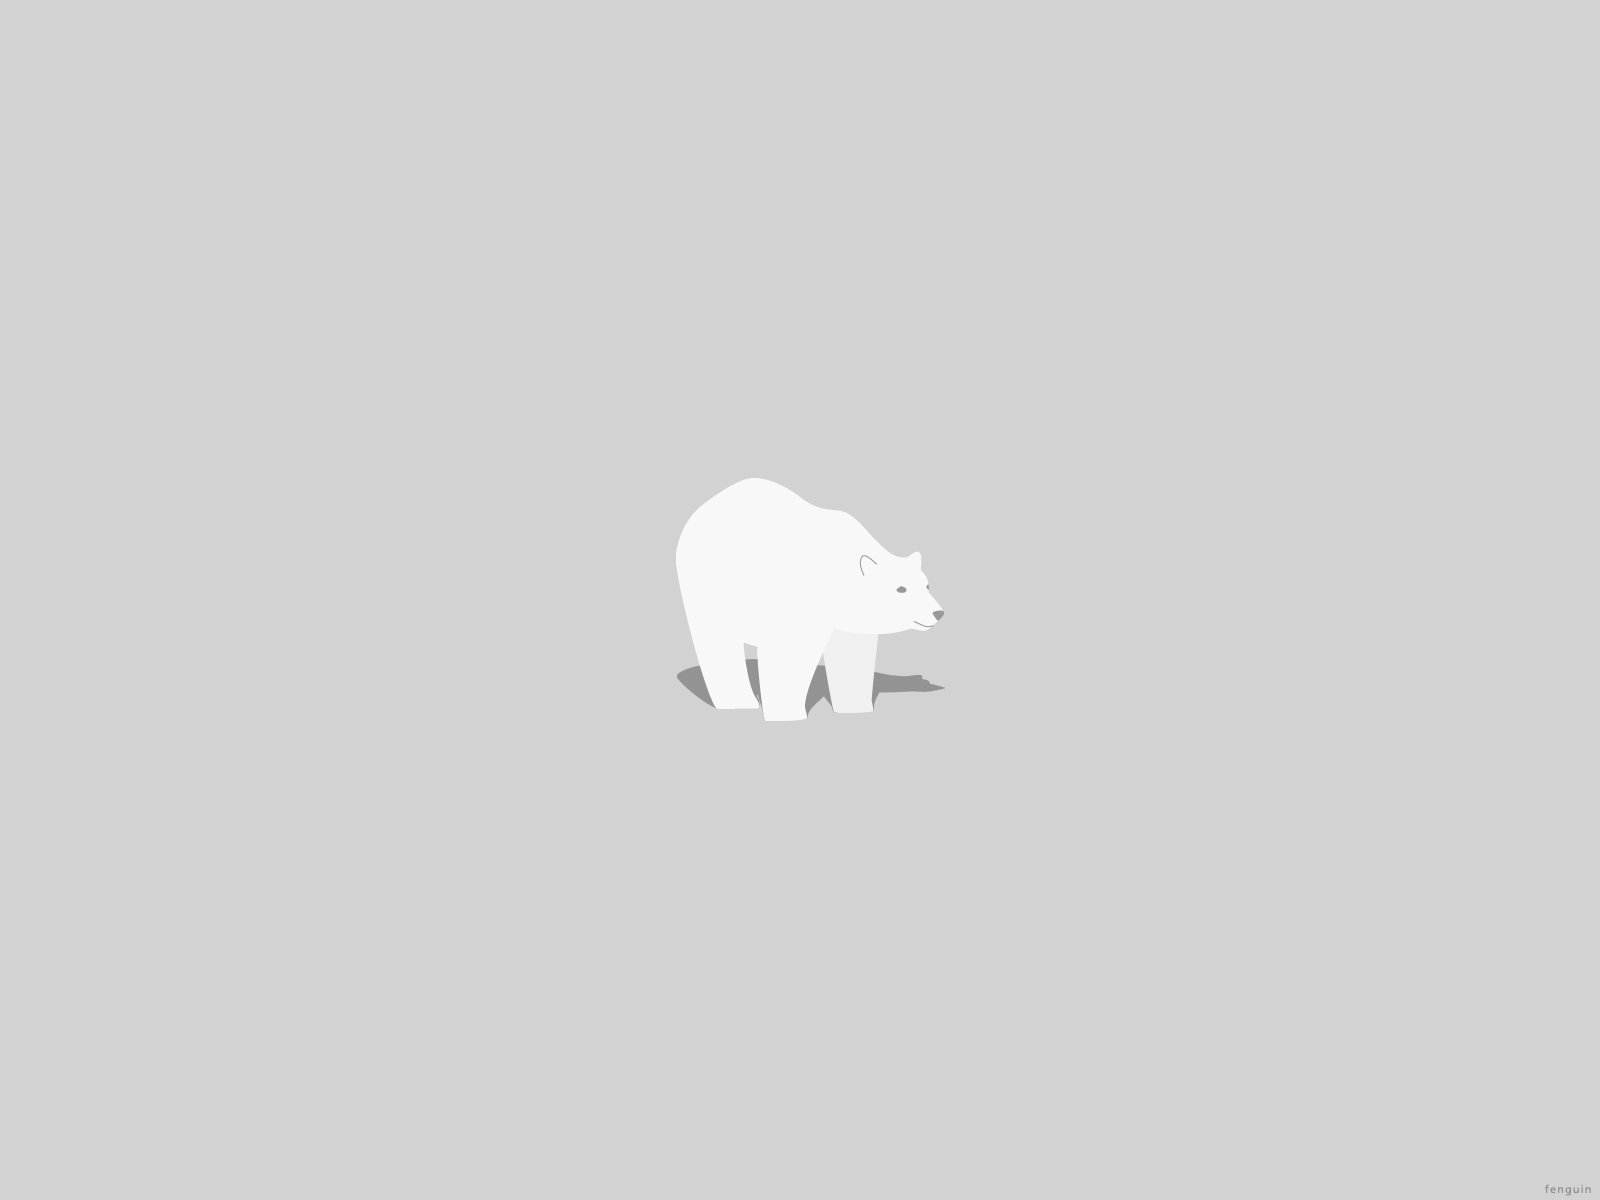 Minimal polar bear